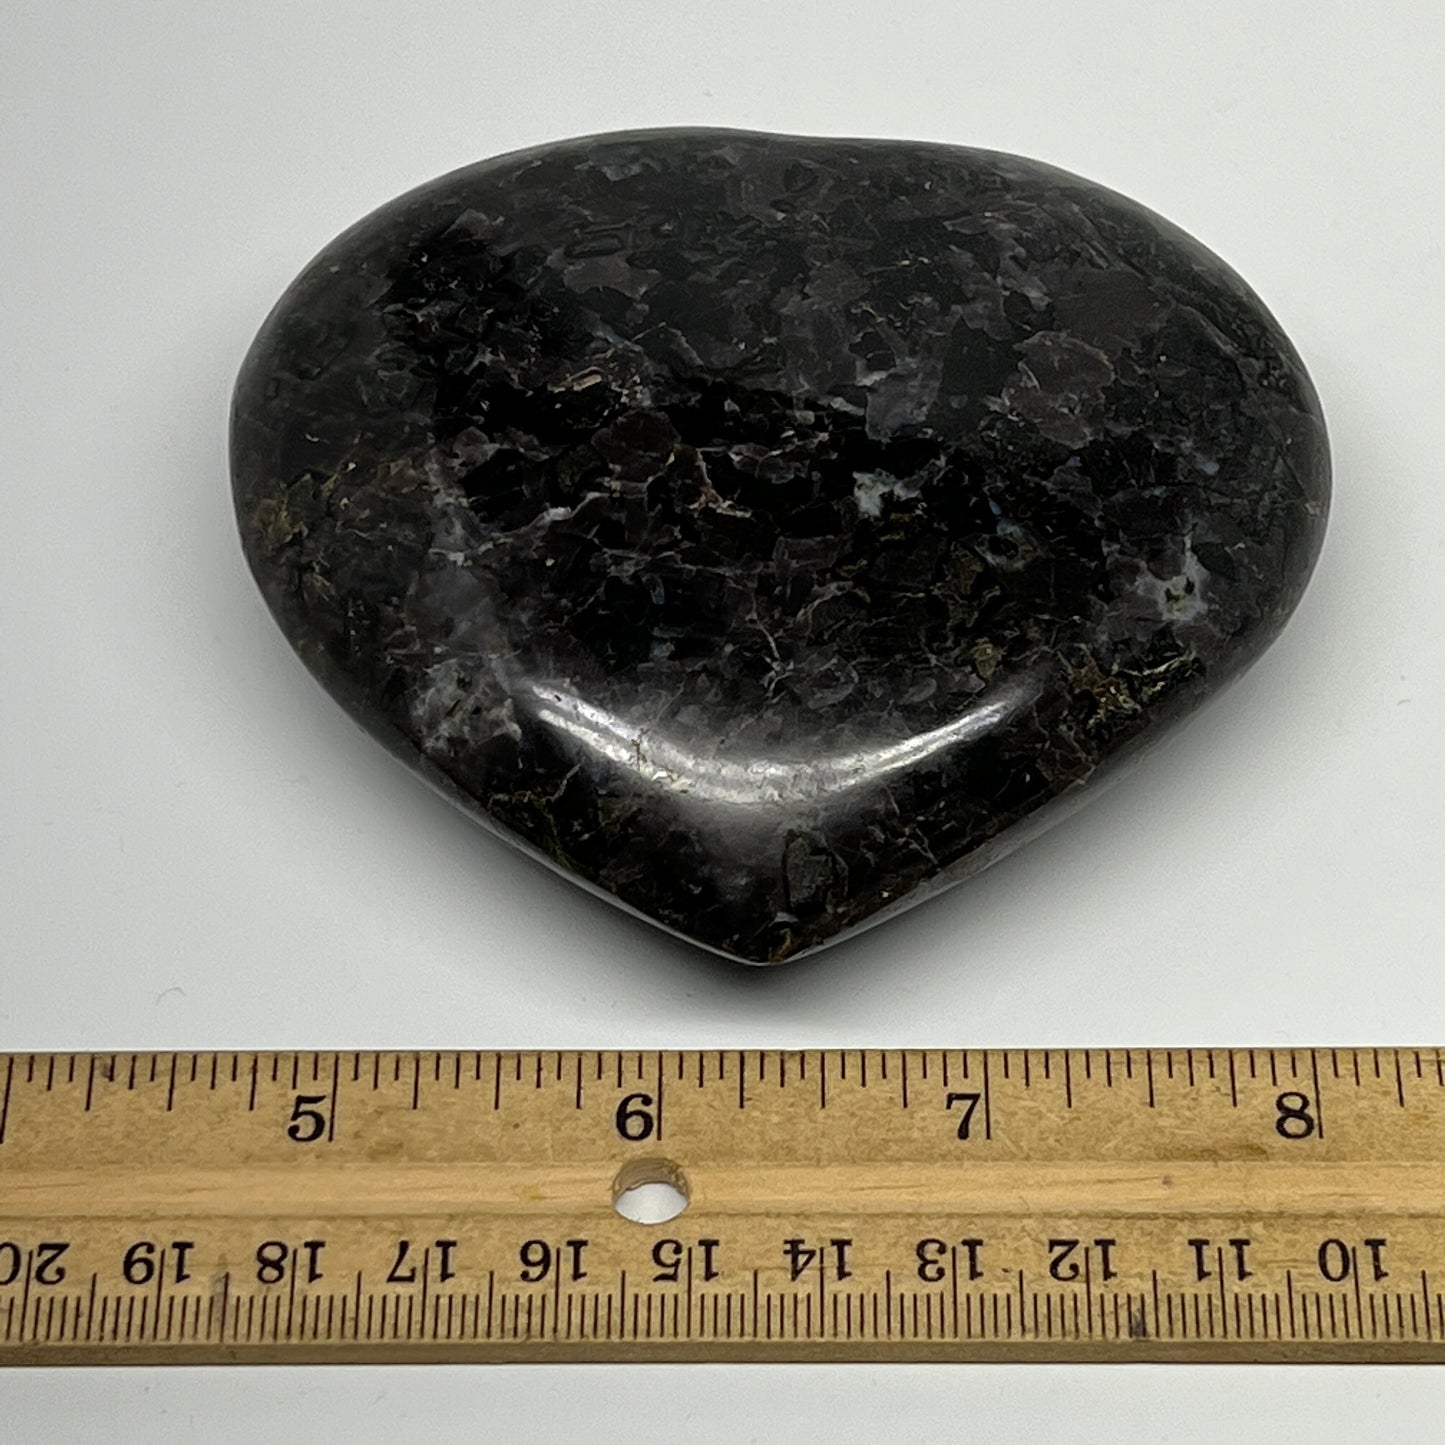 353.1g,3.3"x3.6"x1.2" Indigo Gabro Merlinite Heart Gemstone @Madagascar,B19949